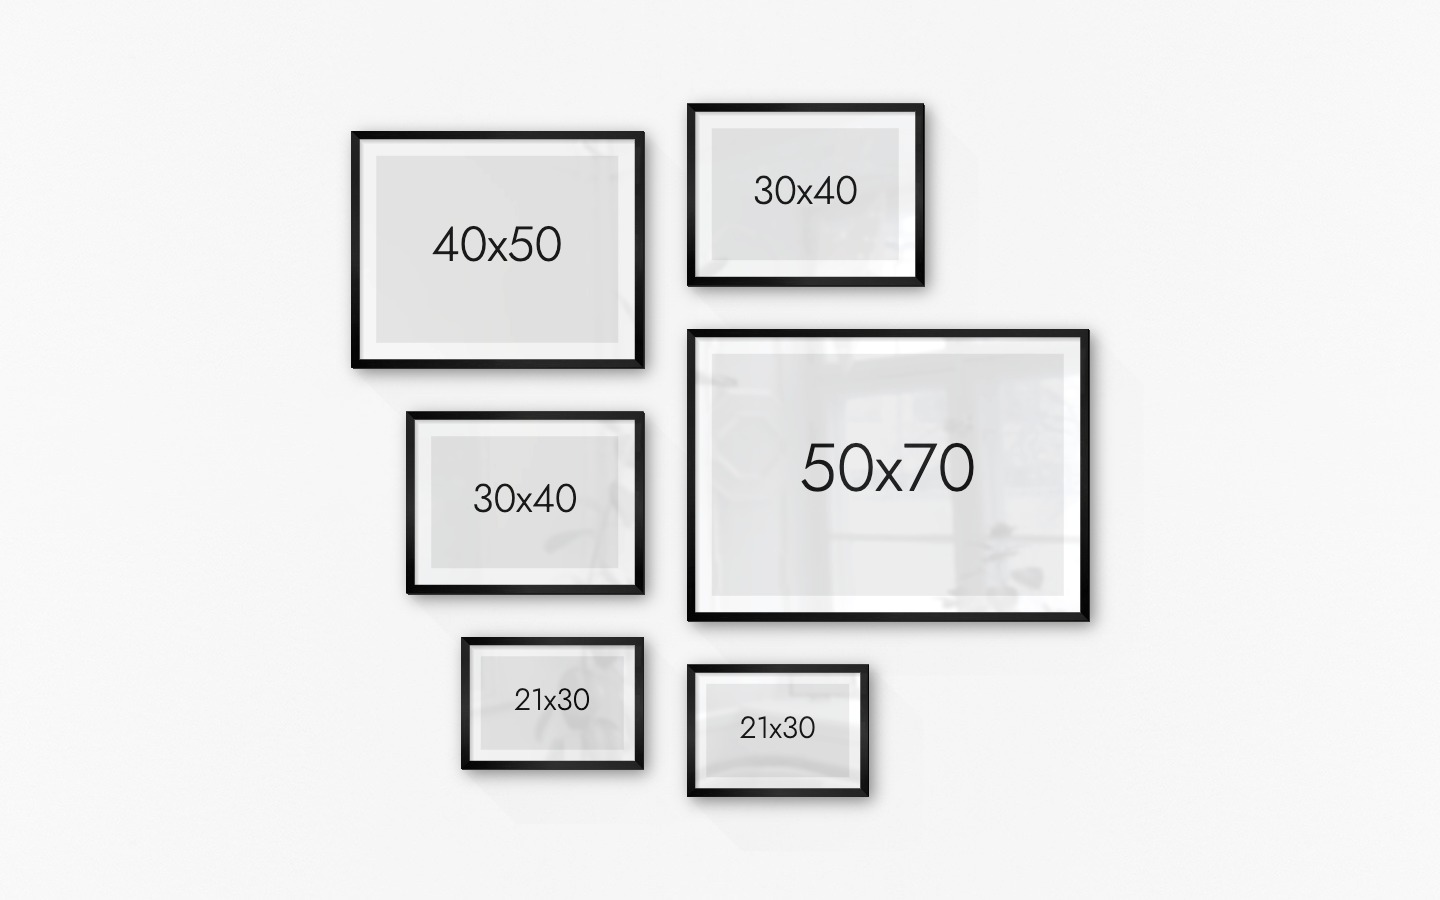 Tavelvägg med ramar i svart i storlekar 40x50, 30x40, 21x30 och 50x70